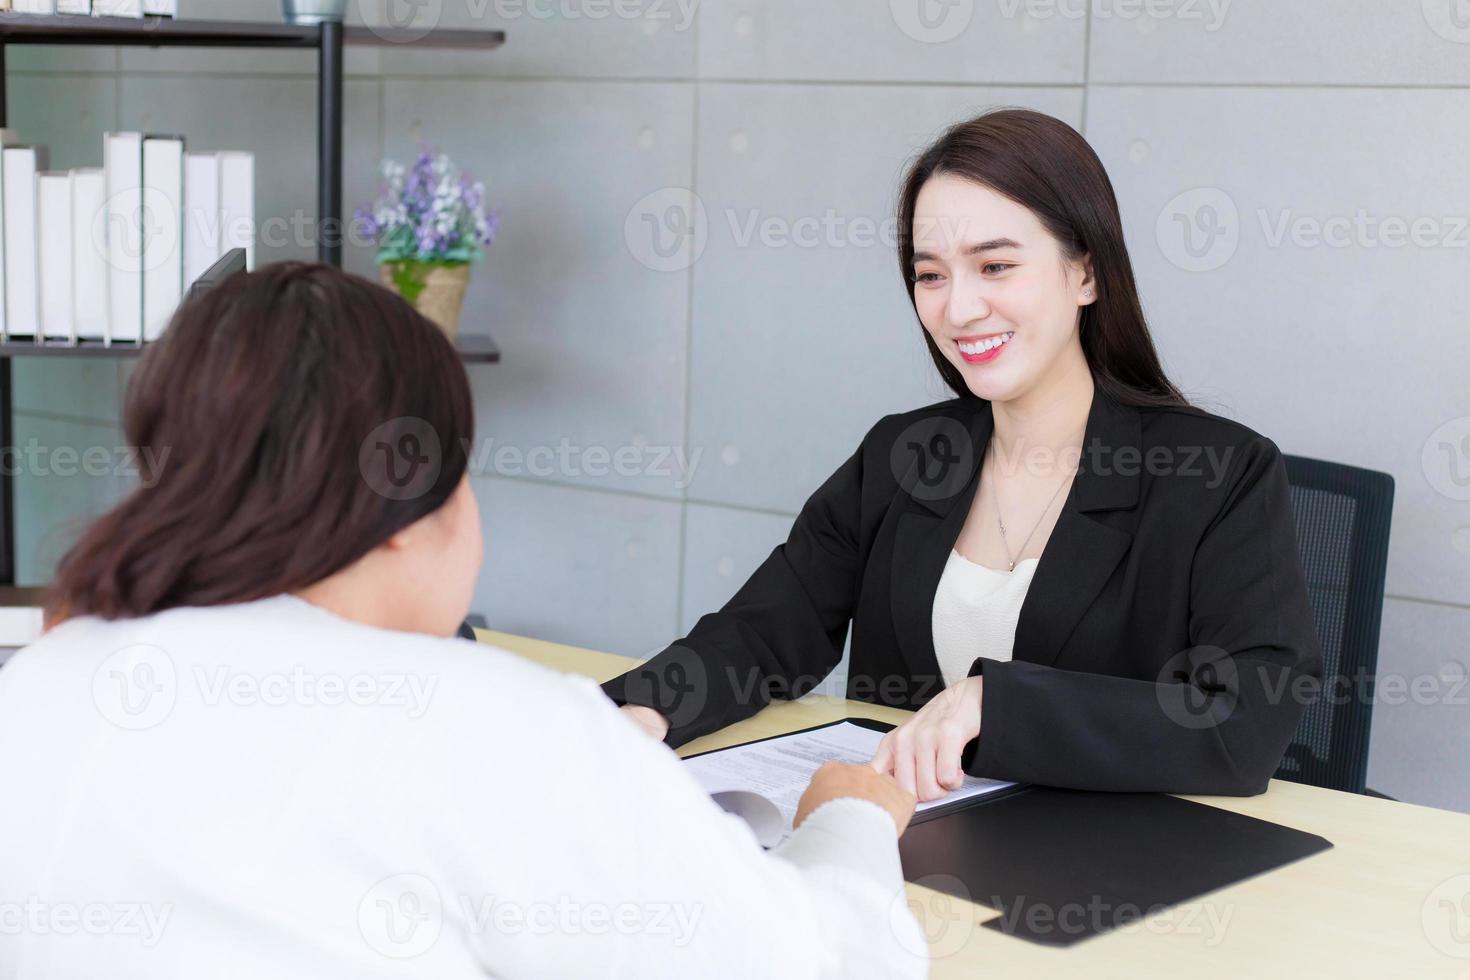 une femme professionnelle asiatique travaille et pointe avec confiance sur le papier ou le document pour discuter avec son patron au bureau. photo